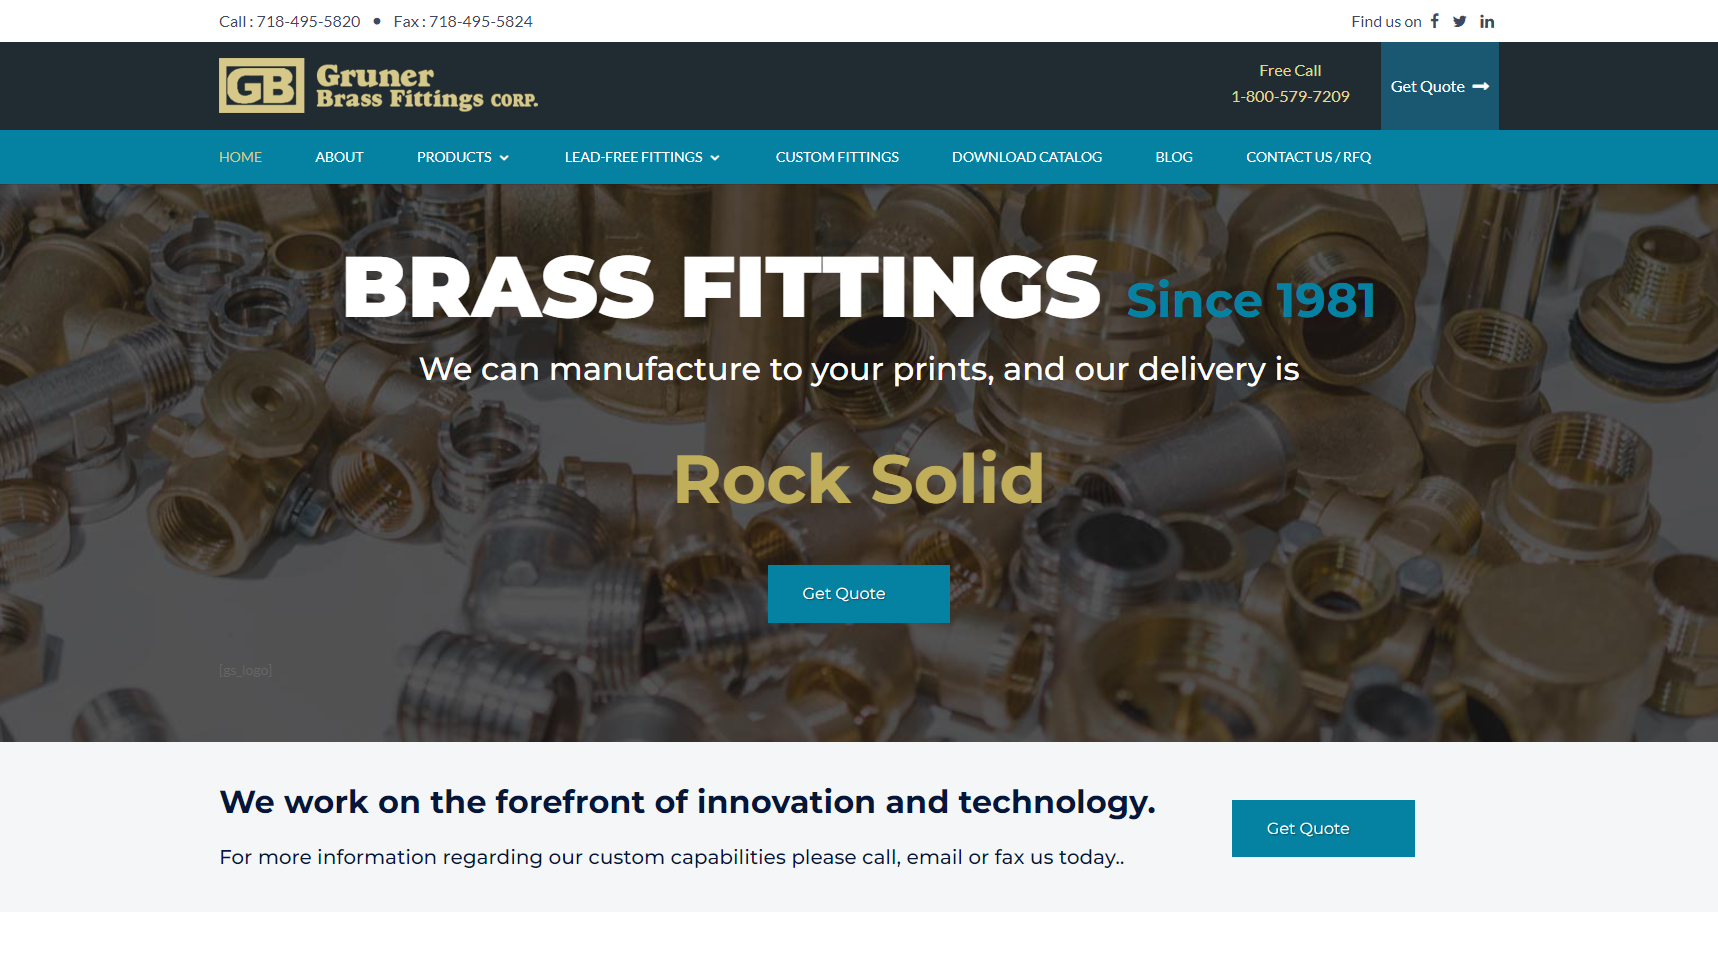 Gruner Brass Fittings Corp. - Brass Fittings Manufacturer